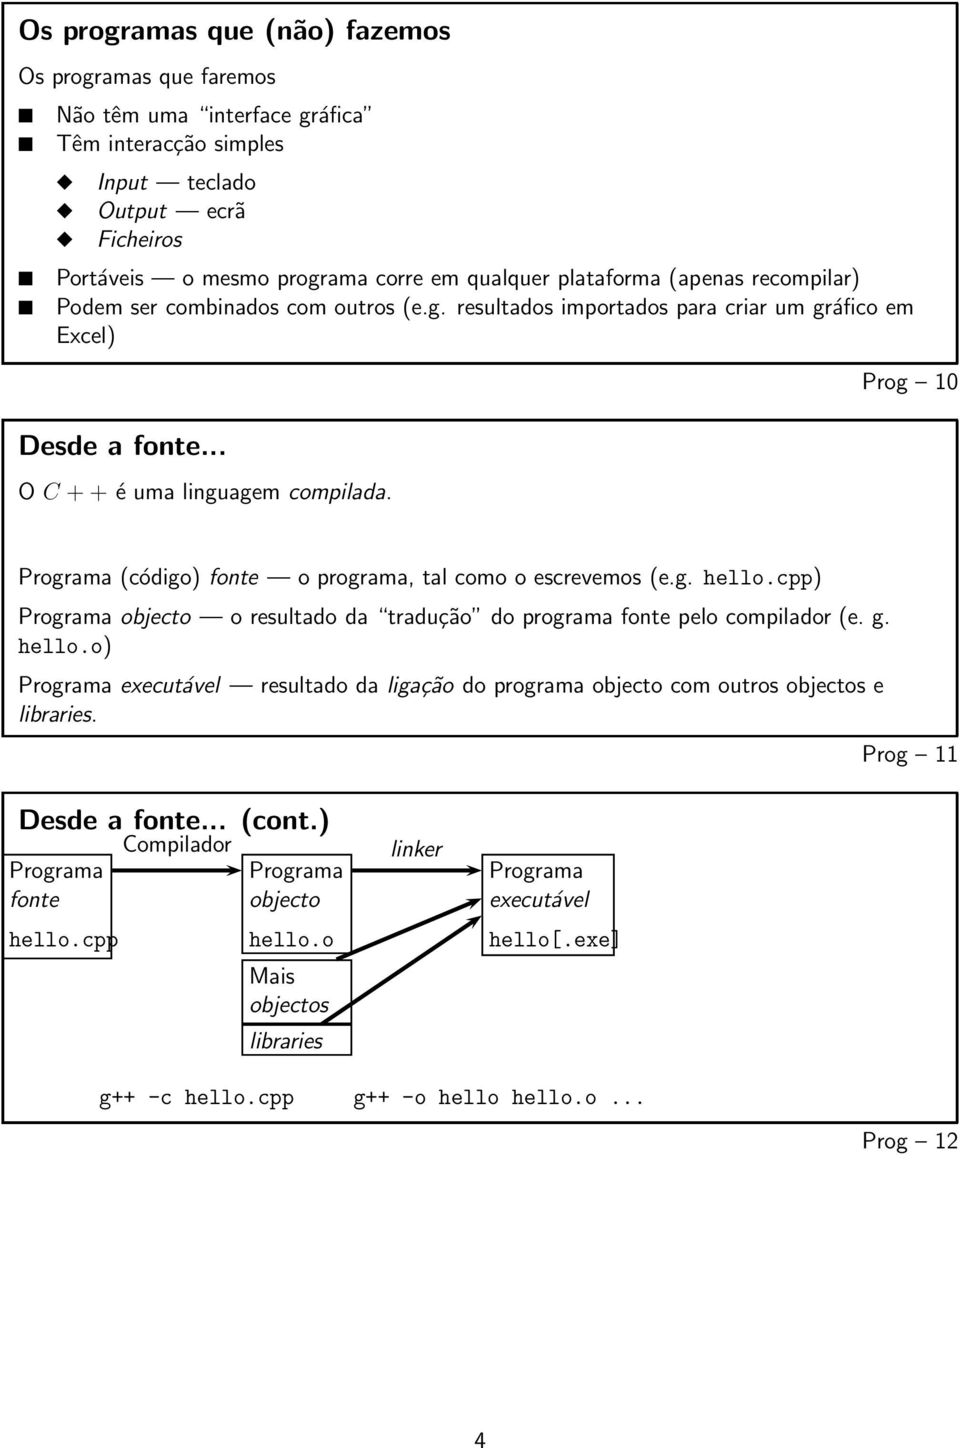 Prog 10 Programa (código) fonte o programa, tal como o escrevemos (e.g. hello.cpp) Programa objecto o resultado da tradução do programa fonte pelo compilador (e. g. hello.o) Programa executável resultado da ligação do programa objecto com outros objectos e libraries.